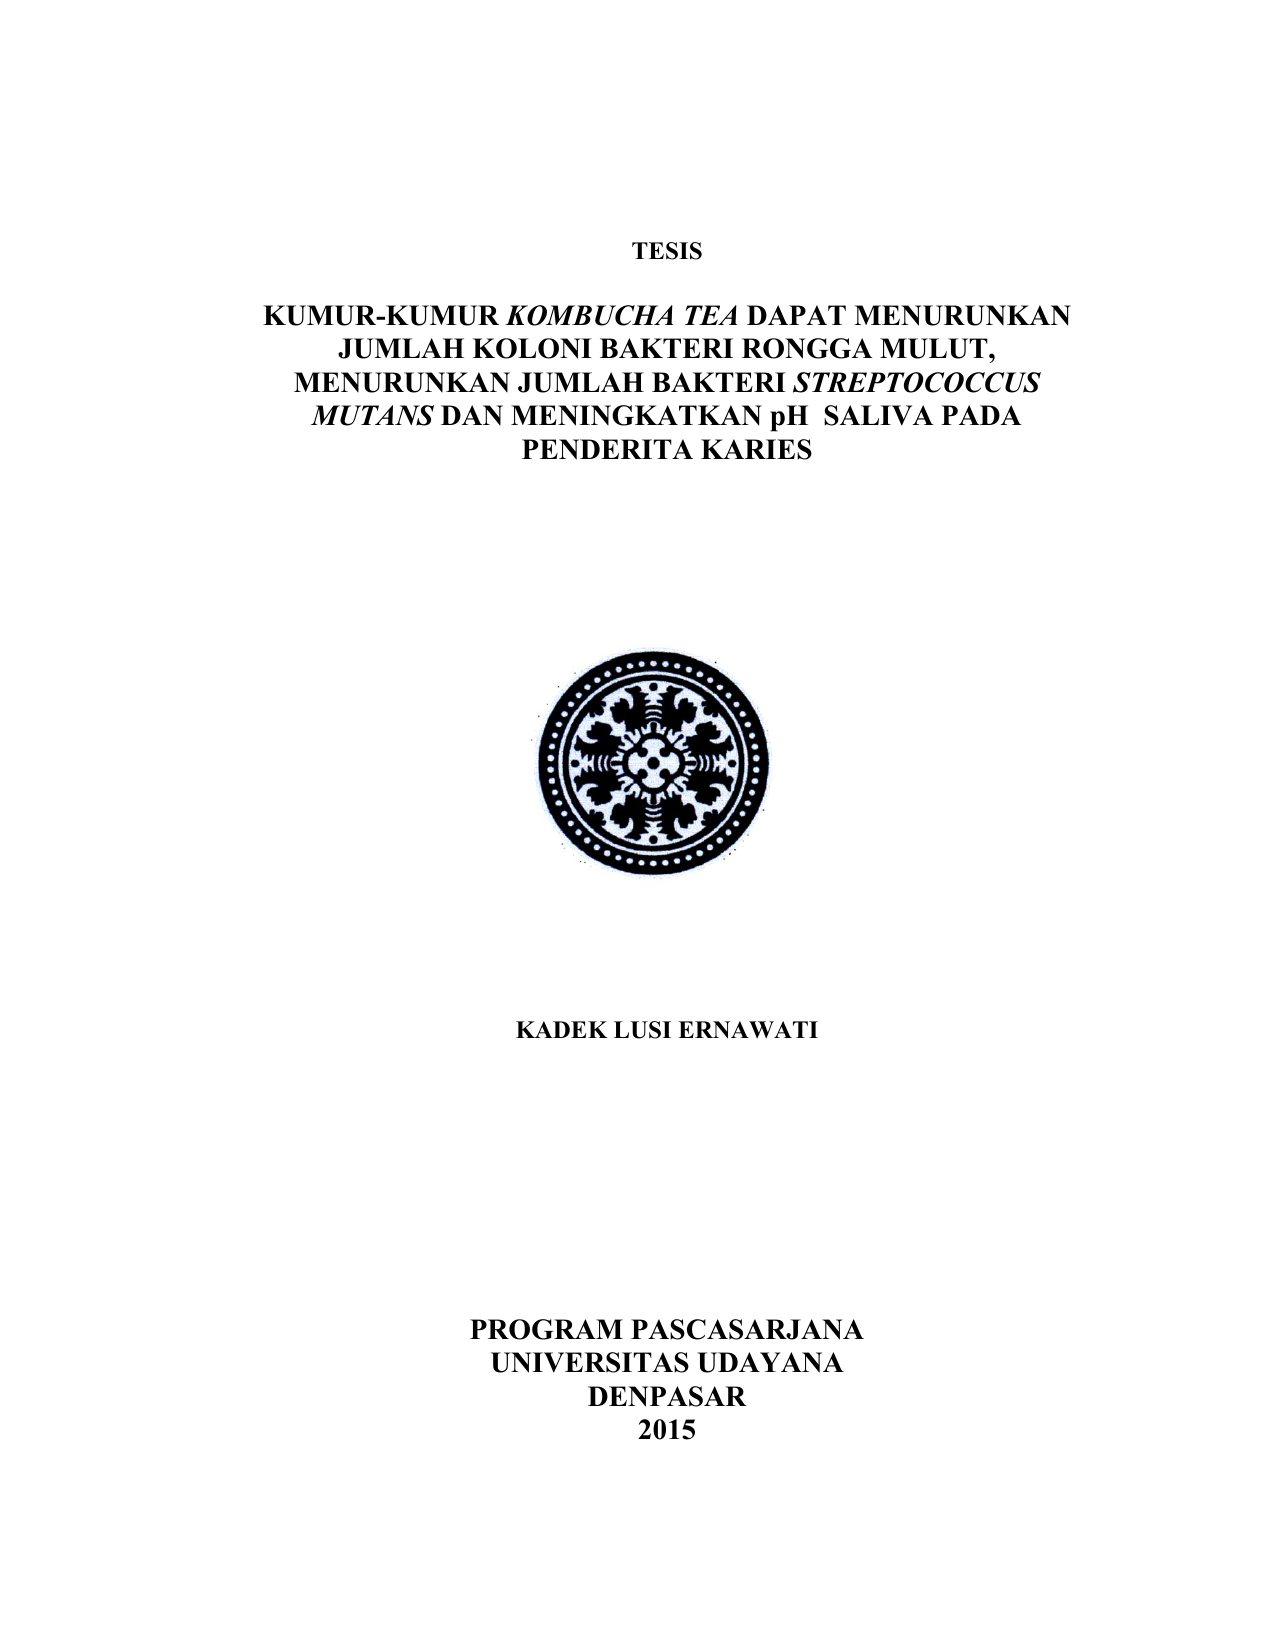 biokimia harper edisi 29 ebook download